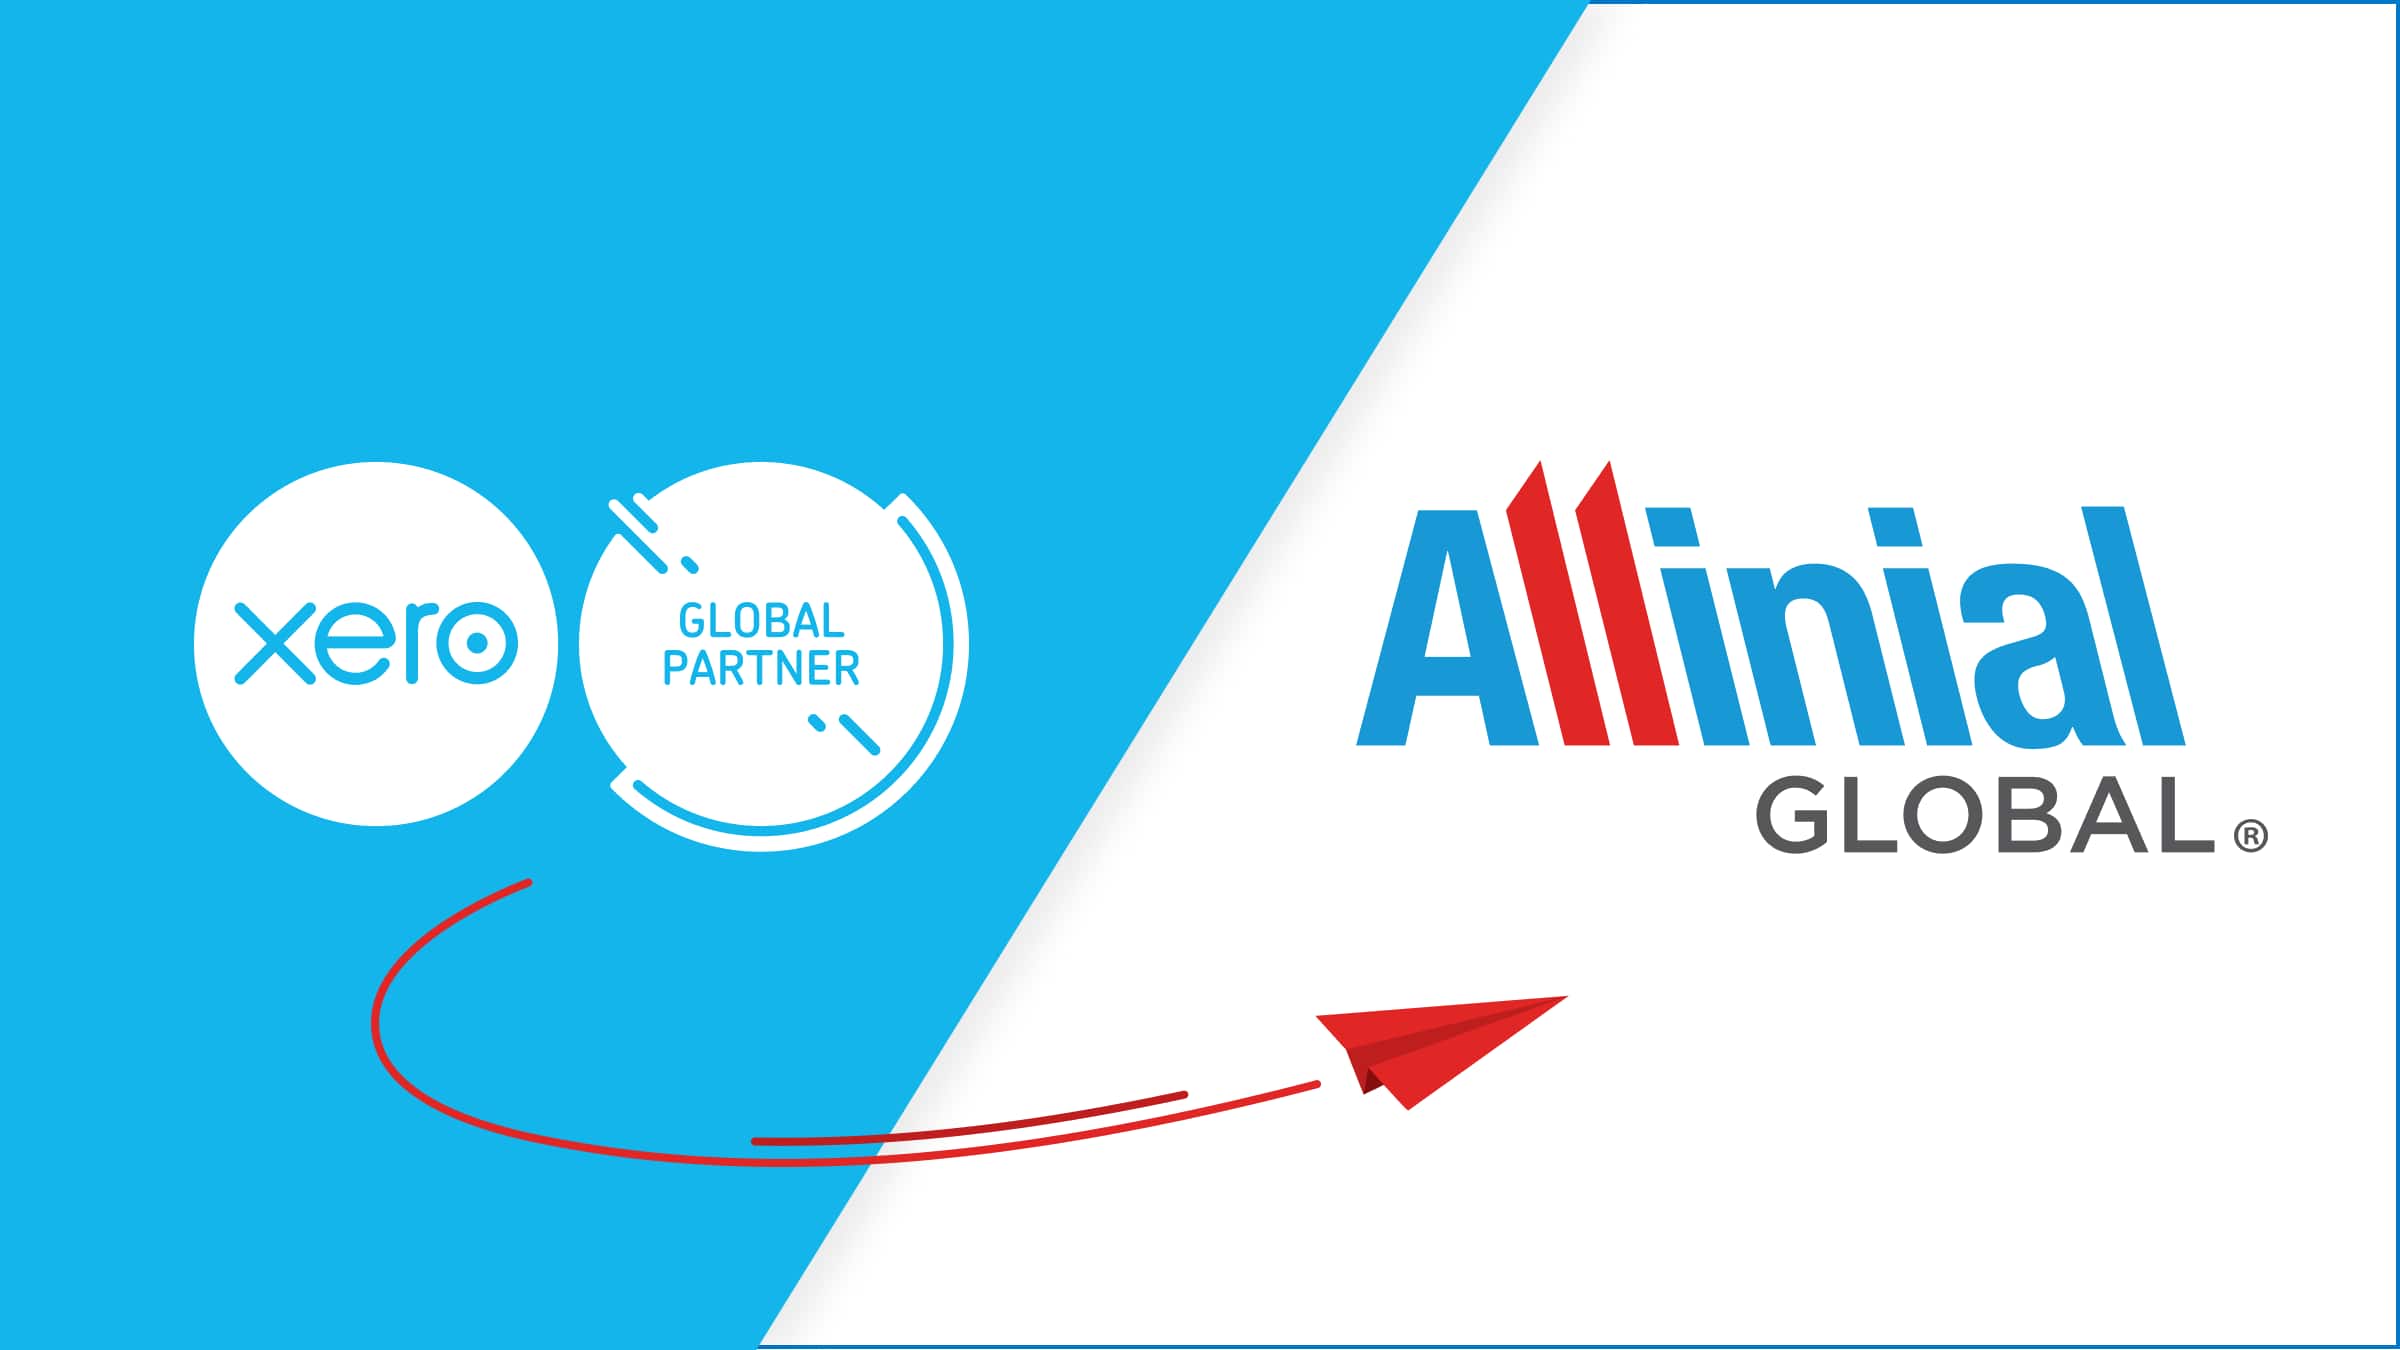 Allinial is a Xero global partner